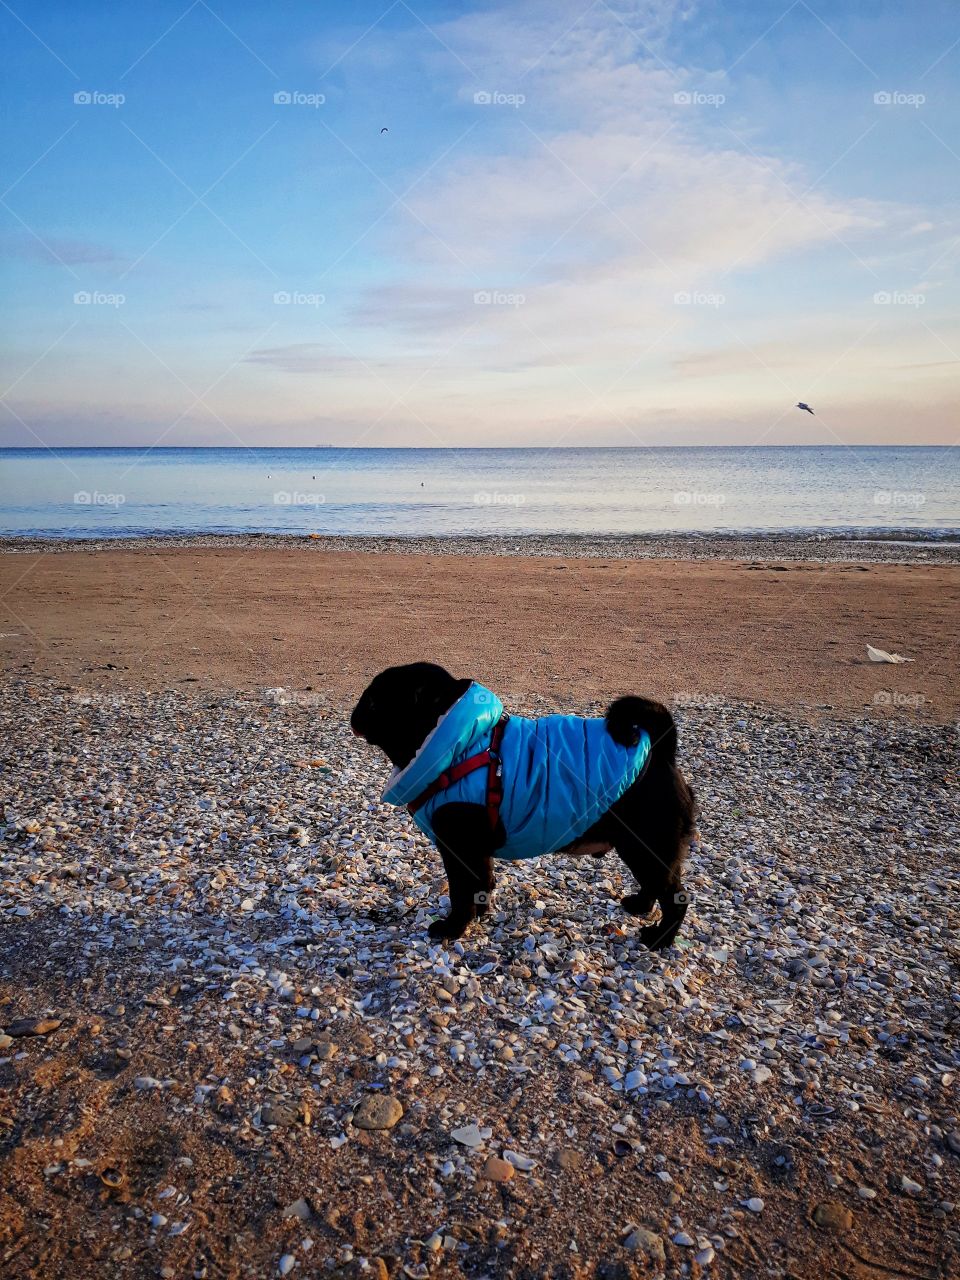 pug on the beach, sea, evening